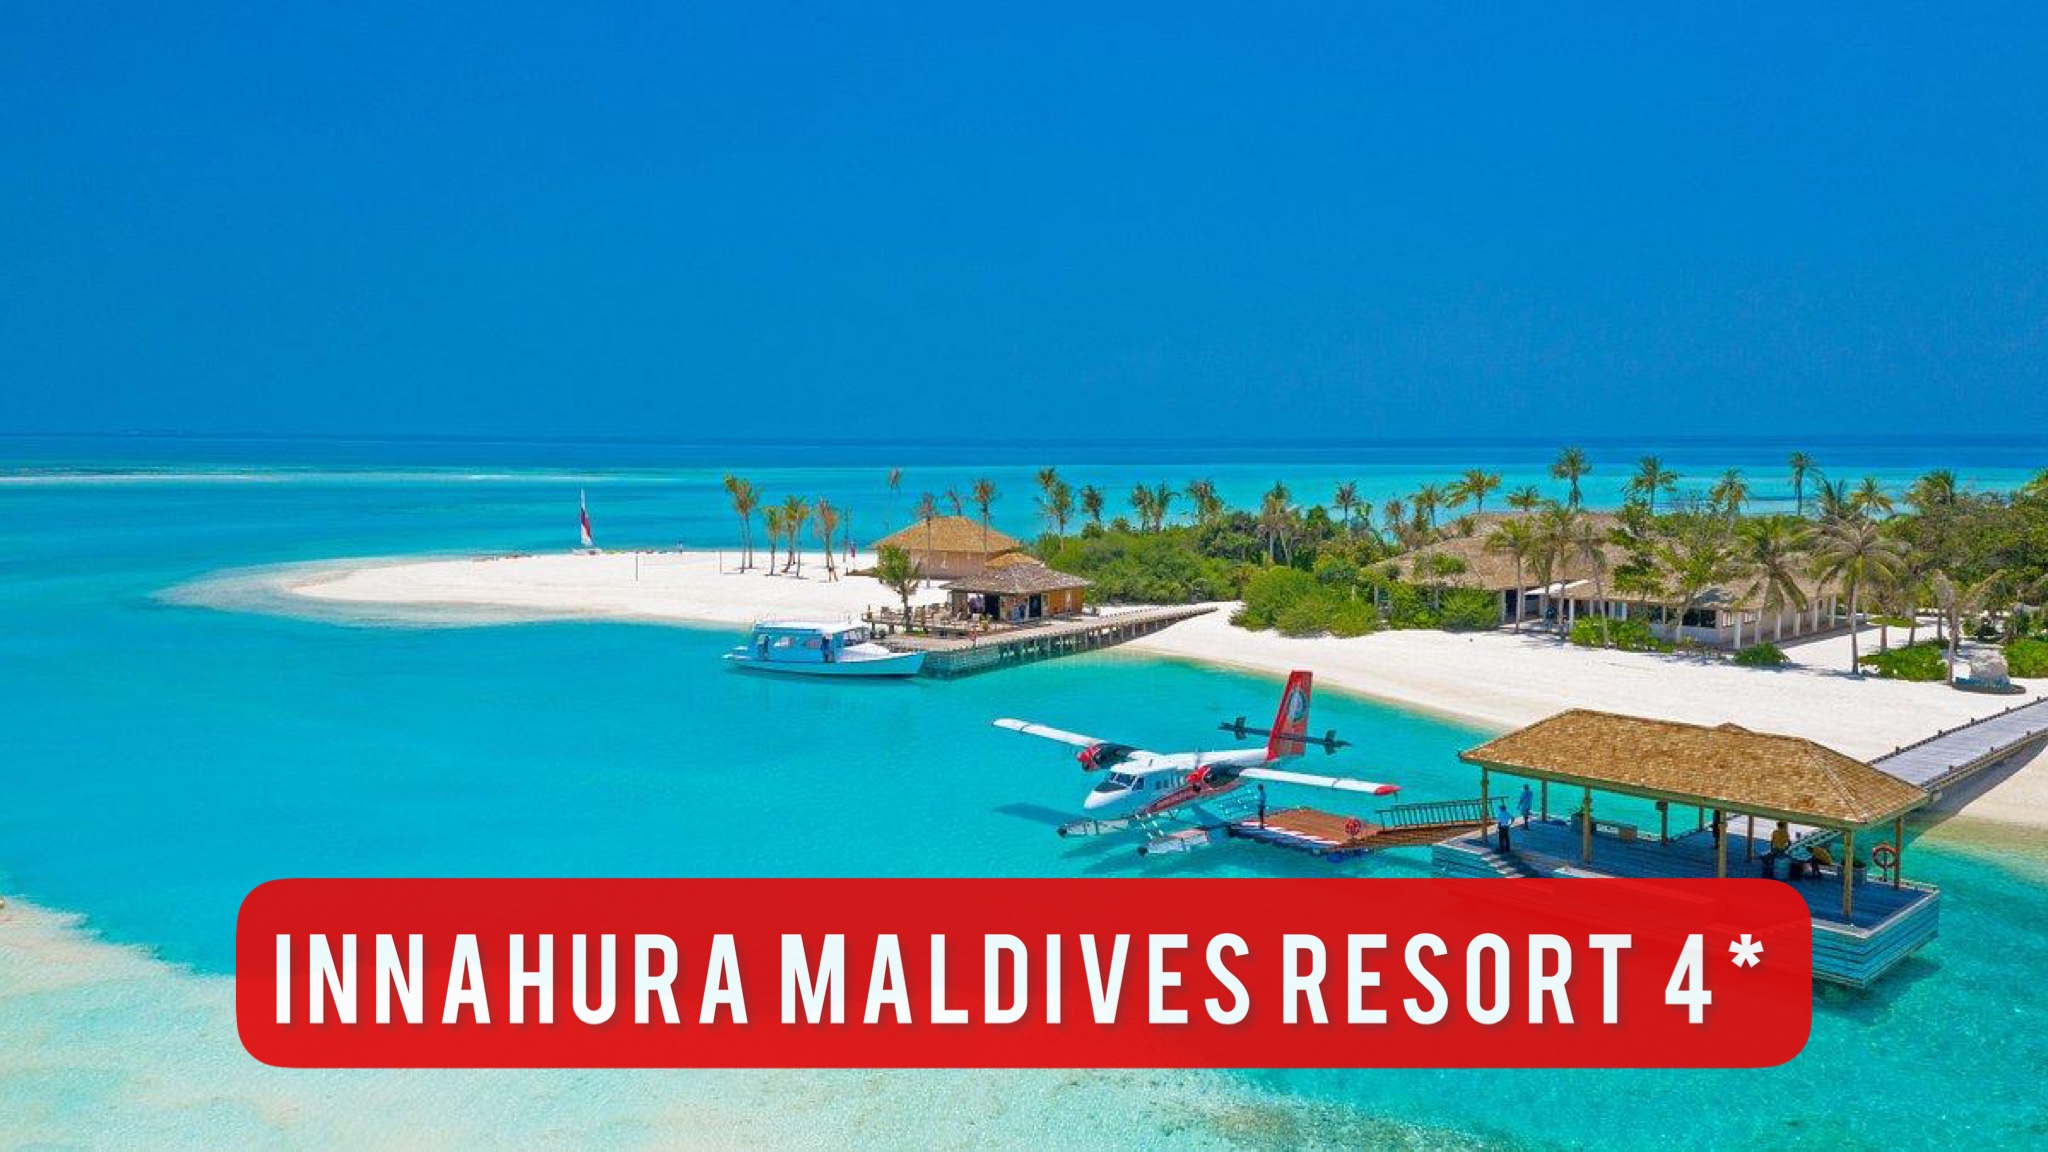 Innahura Maldives Resort 4* Атолл Лавияни, Мальдивы - ожидание и реальность...